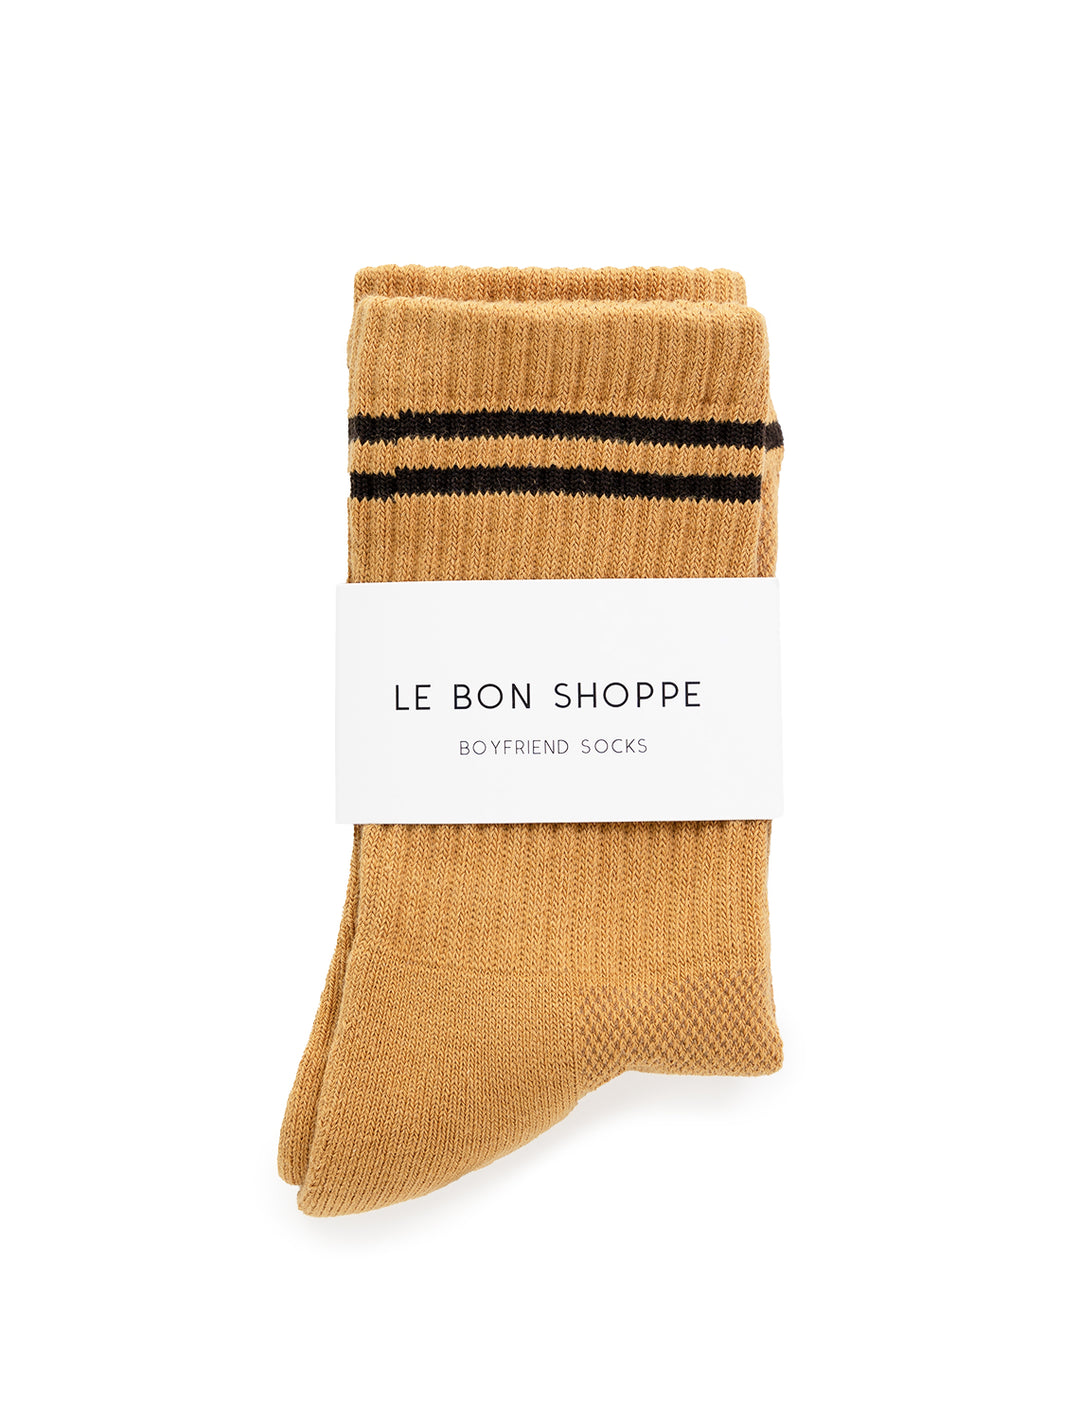 Overhead view of Le Bon Shoppe's boyfriend socks in biscotti.